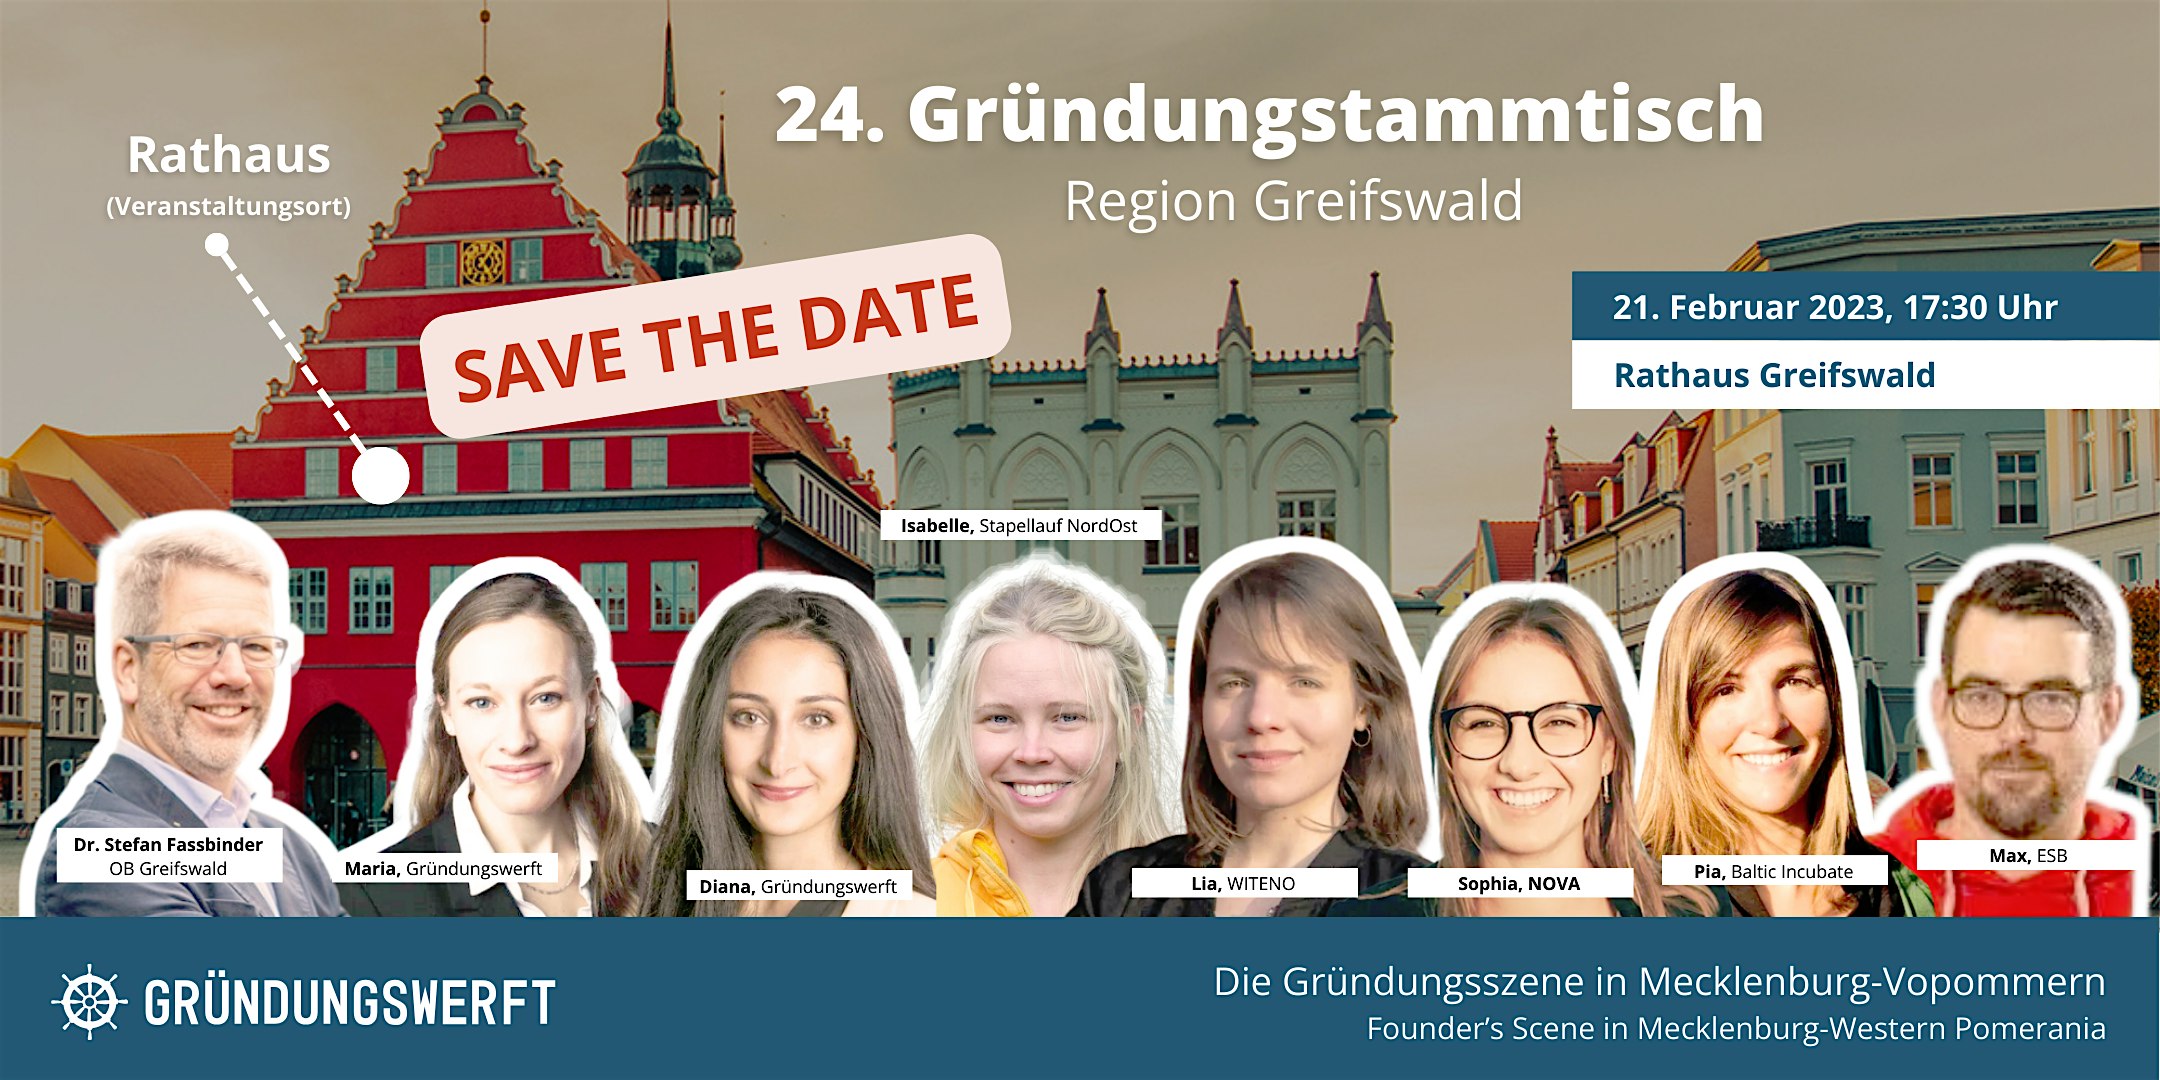 Veranstaltungsbild für die Veranstaltung 24. Gründungsstammtisch Region Greifswald - Students & Investors